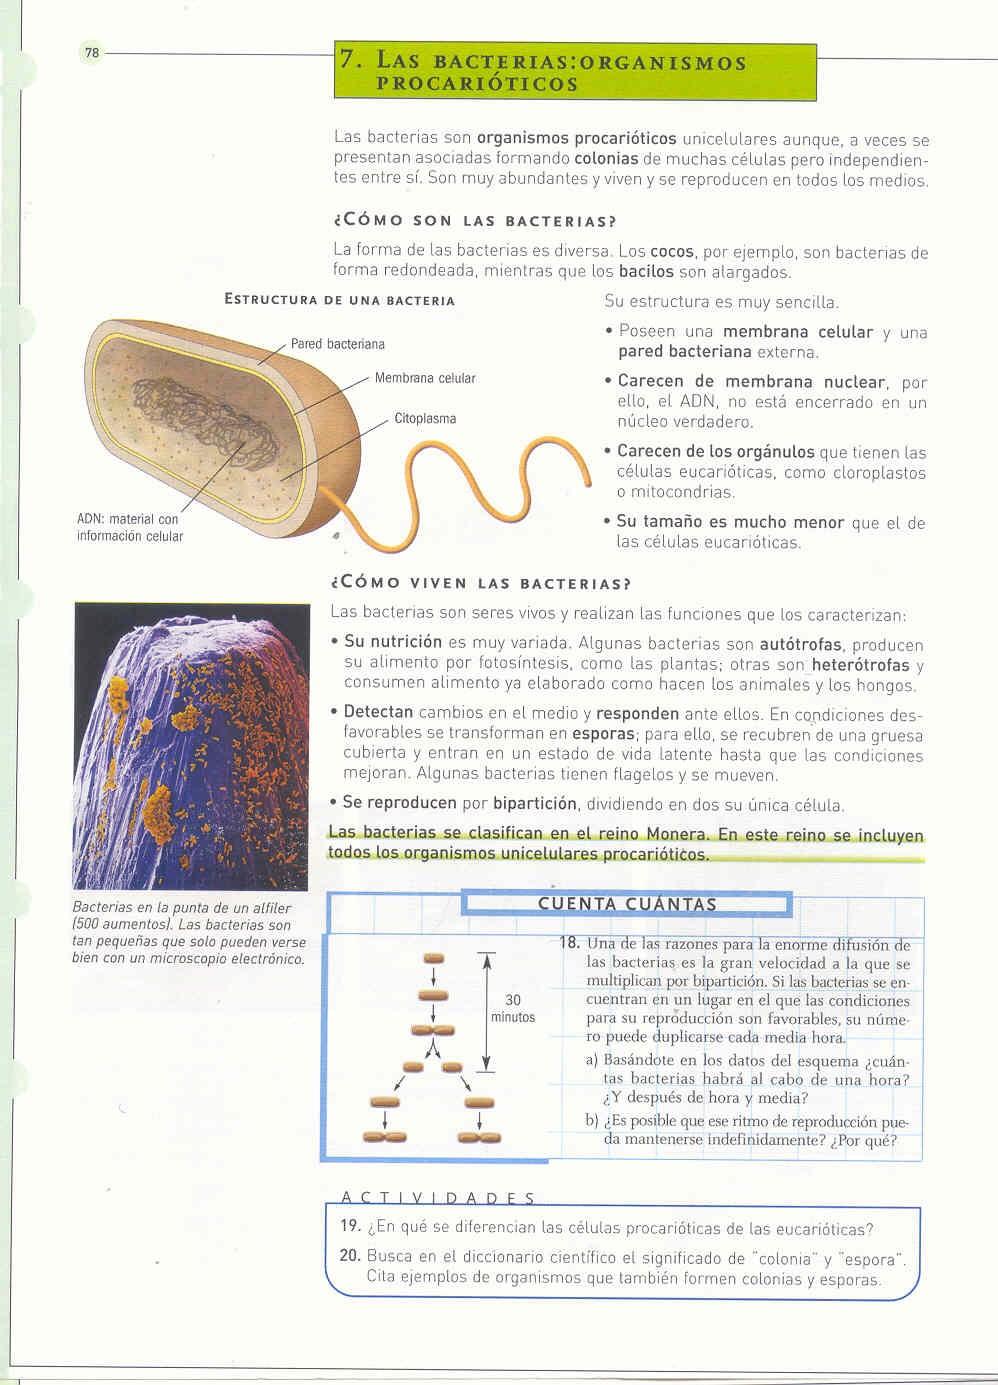 7. LAS BACTERIAS. ORGANISMOS PROCARIOTAS. Son organismos PROCARIOTAS de formas muy diversas (cocos, bacilos, espirilos...).